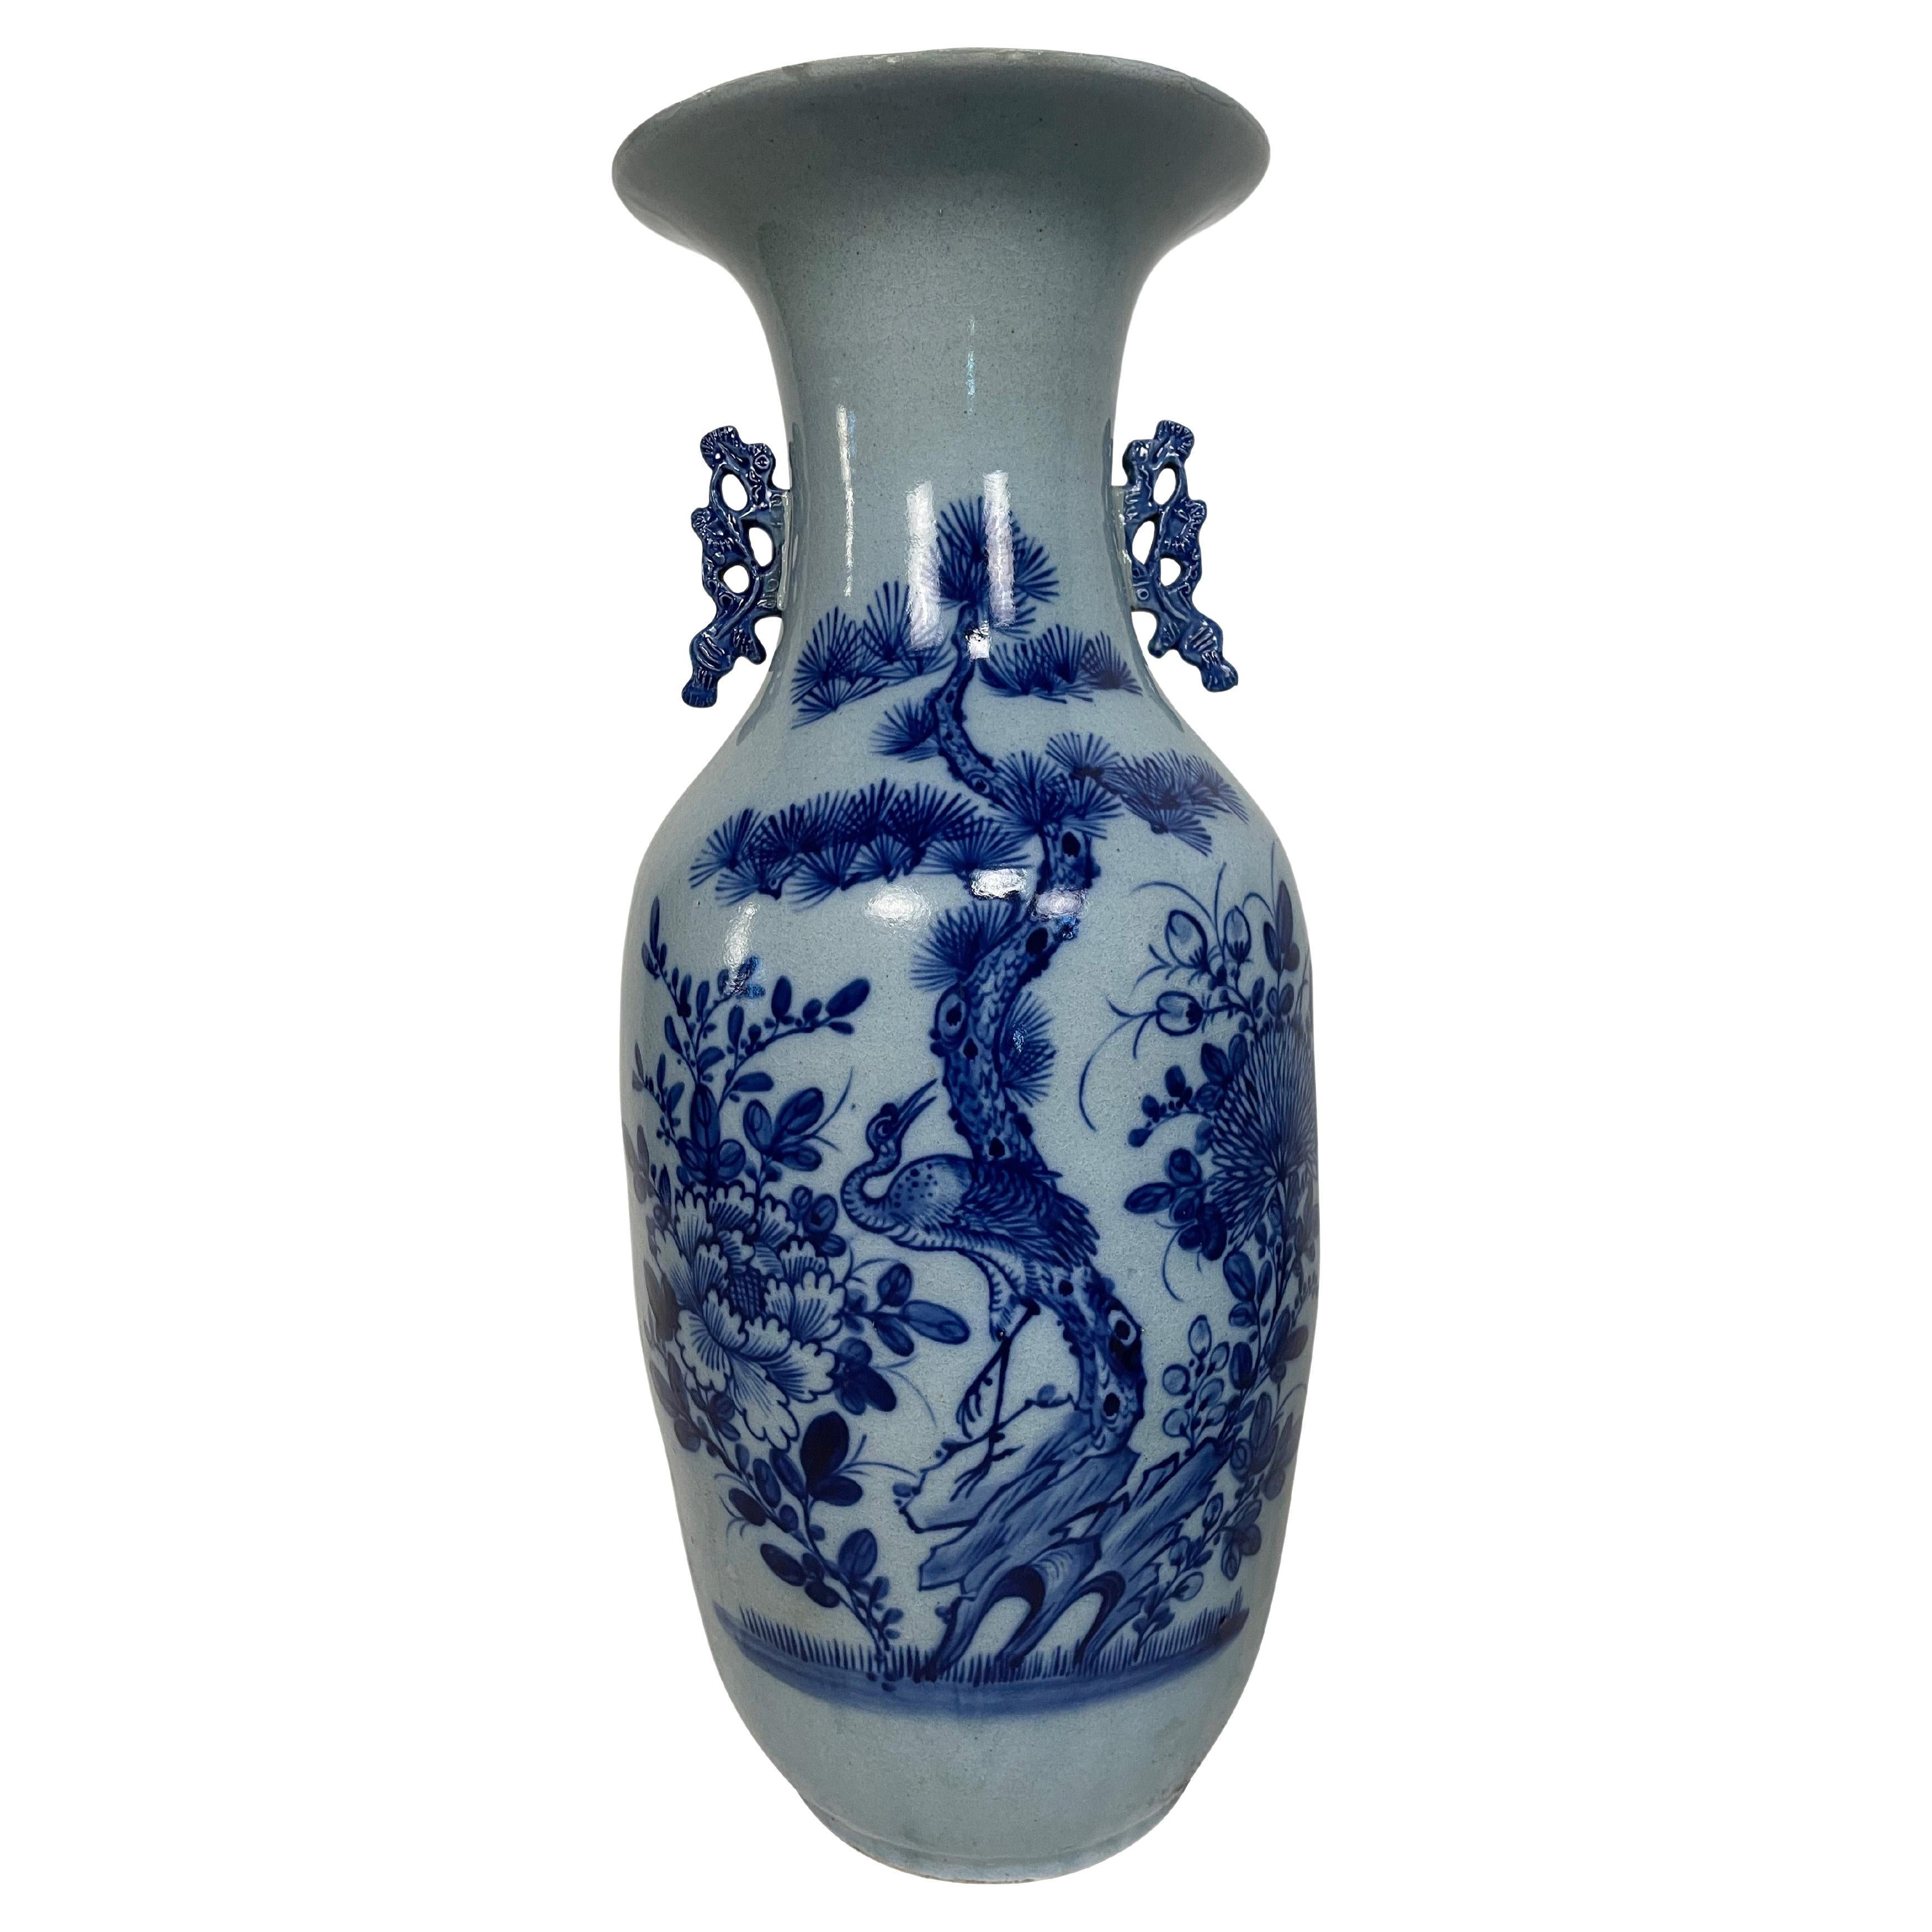 Eine feine antike chinesische Balustervase aus dem 19. Jahrhundert, verziert mit verschiedenen Blumen und Objekten in Flachrelief und kobaltblauer Unterglasur auf weiß glasiertem Grund. Die Vase hat geformte, stilisierte kobaltblaue Henkel zu beiden